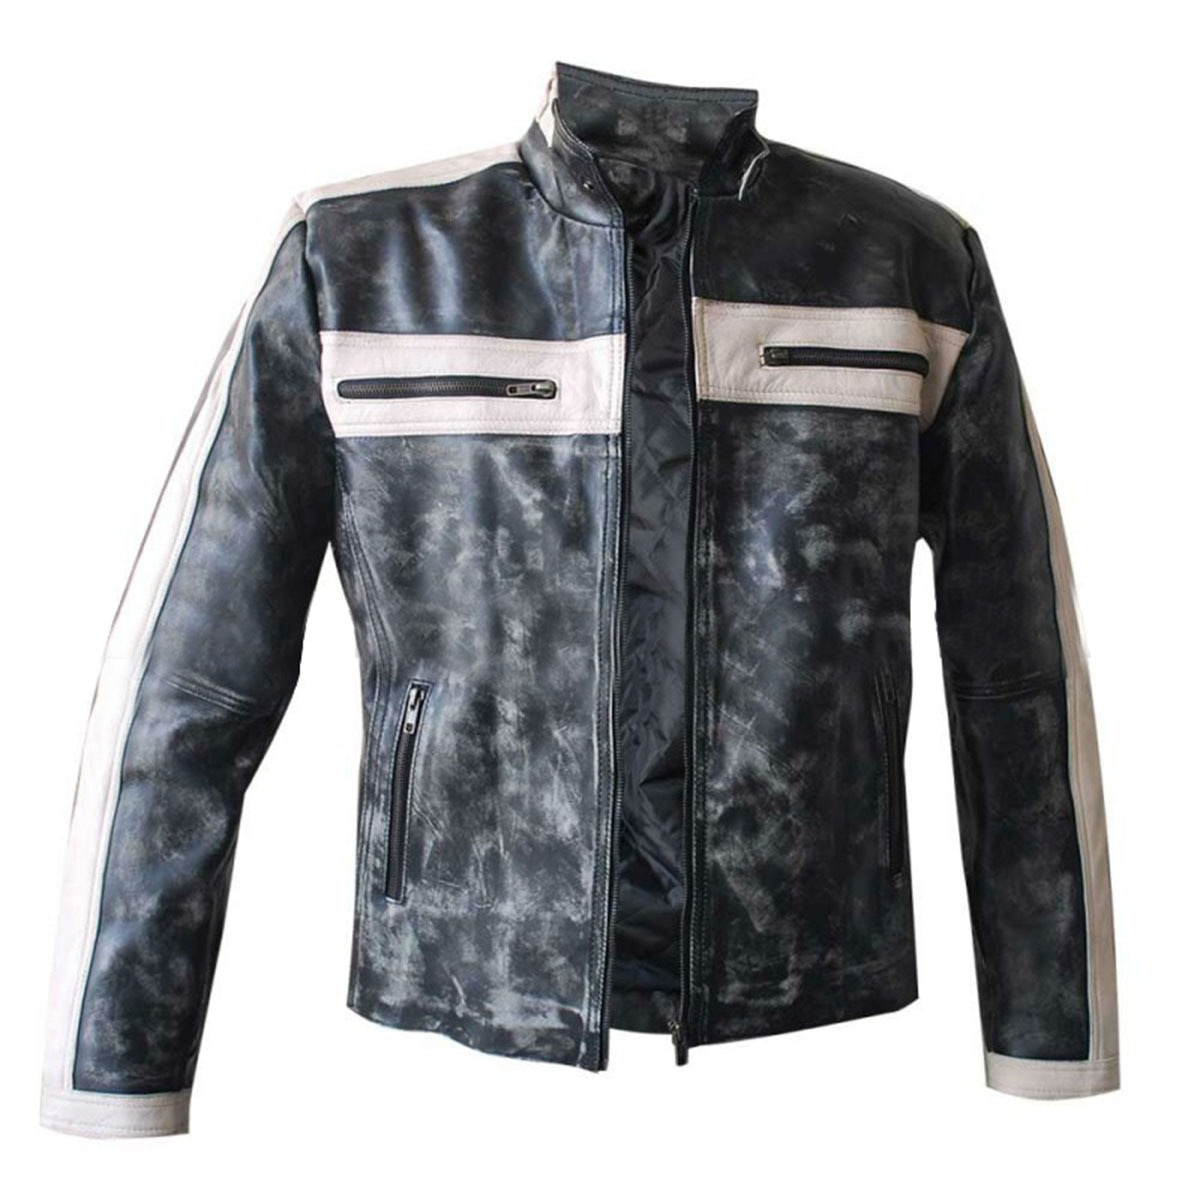 Grey Designers Bomber Leather Jacket